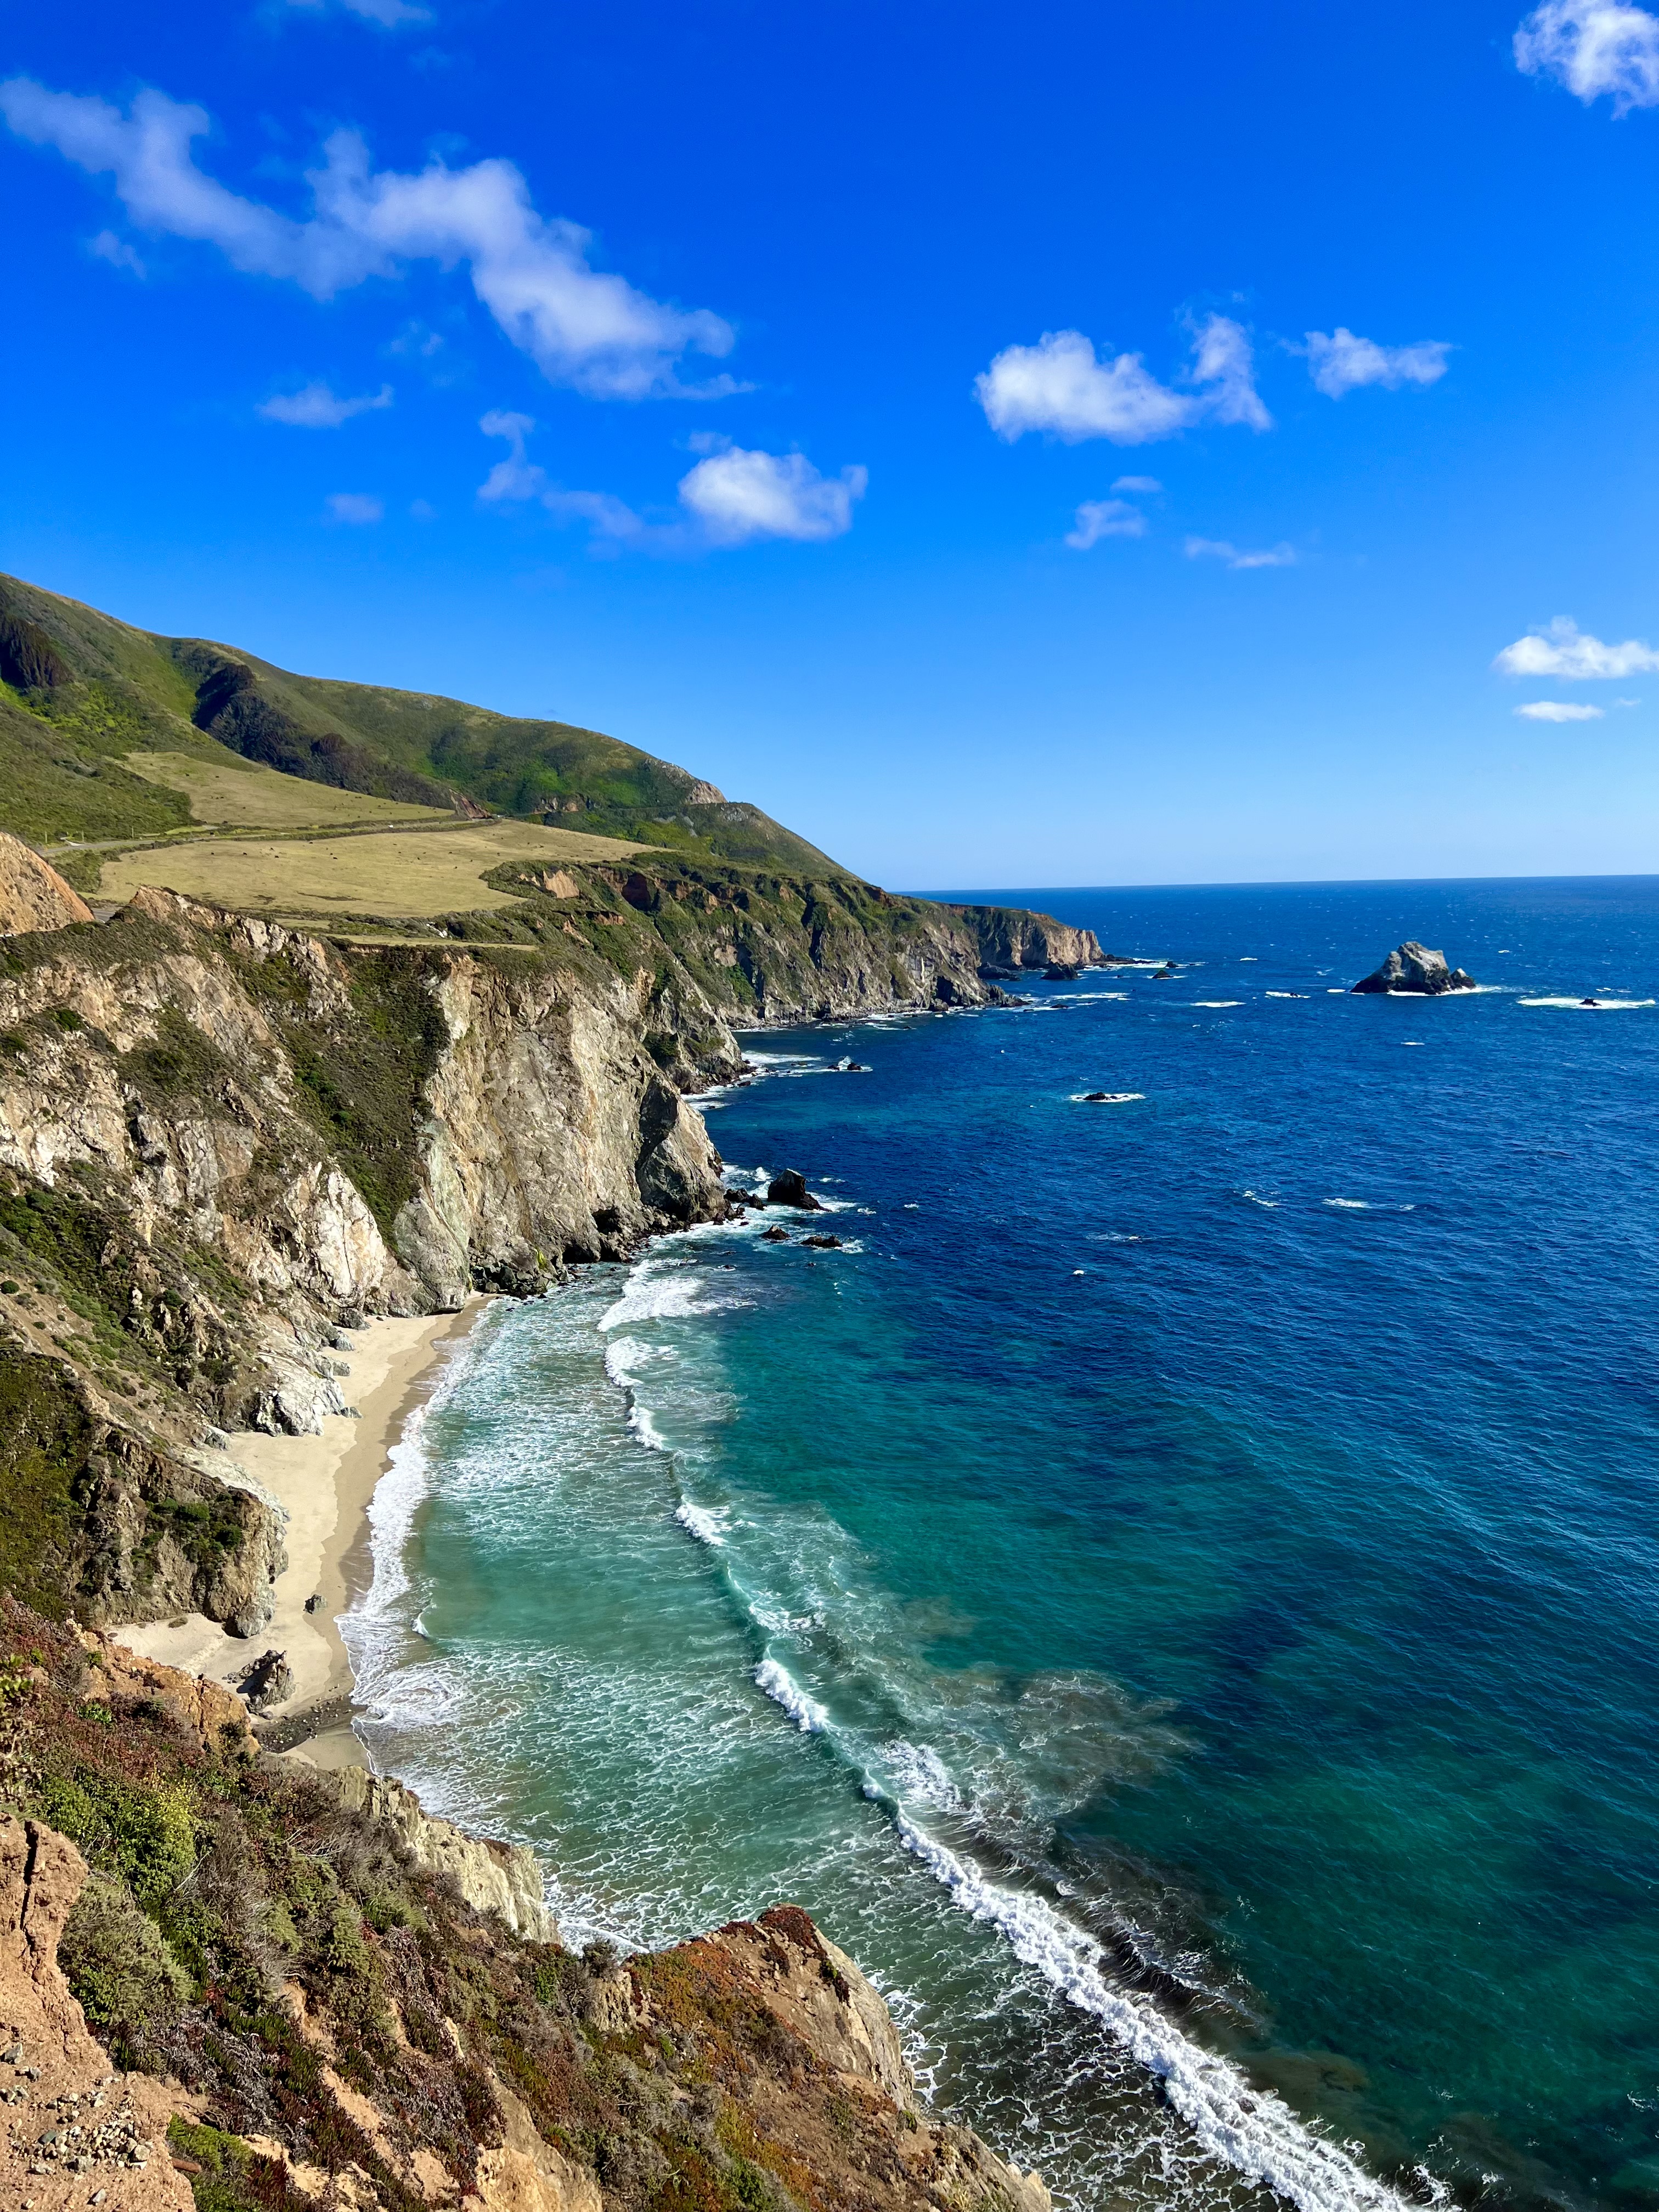 Carmel green cliffs and ocean view